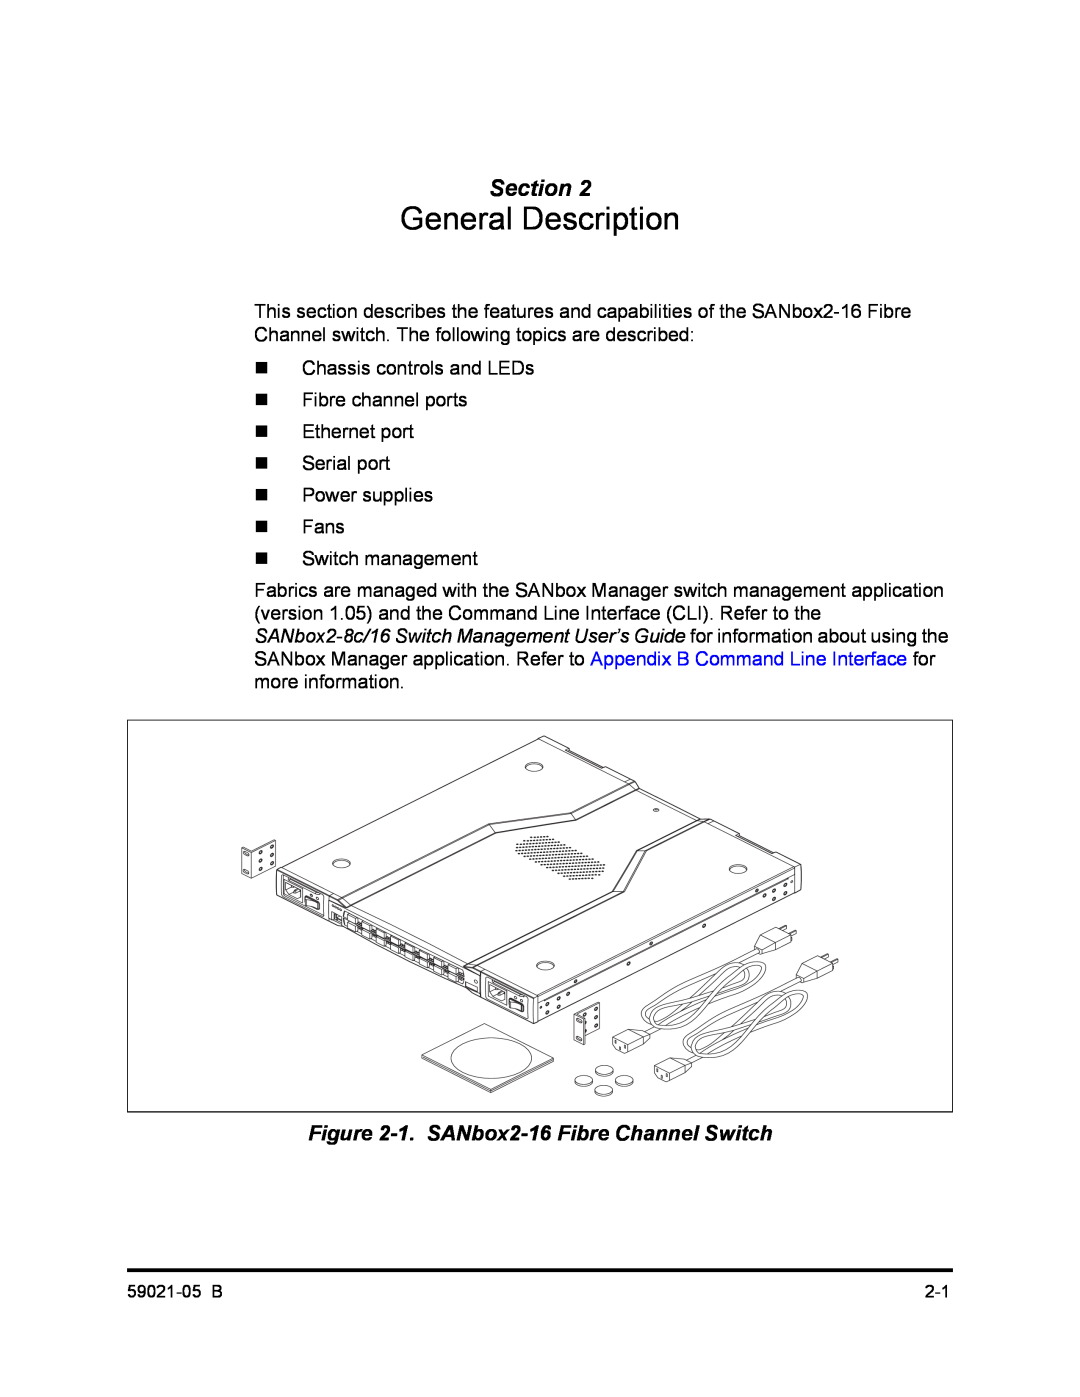 Q-Logic 59021-05 B manual General Description, 1. SANbox2-16 Fibre Channel Switch, Section 